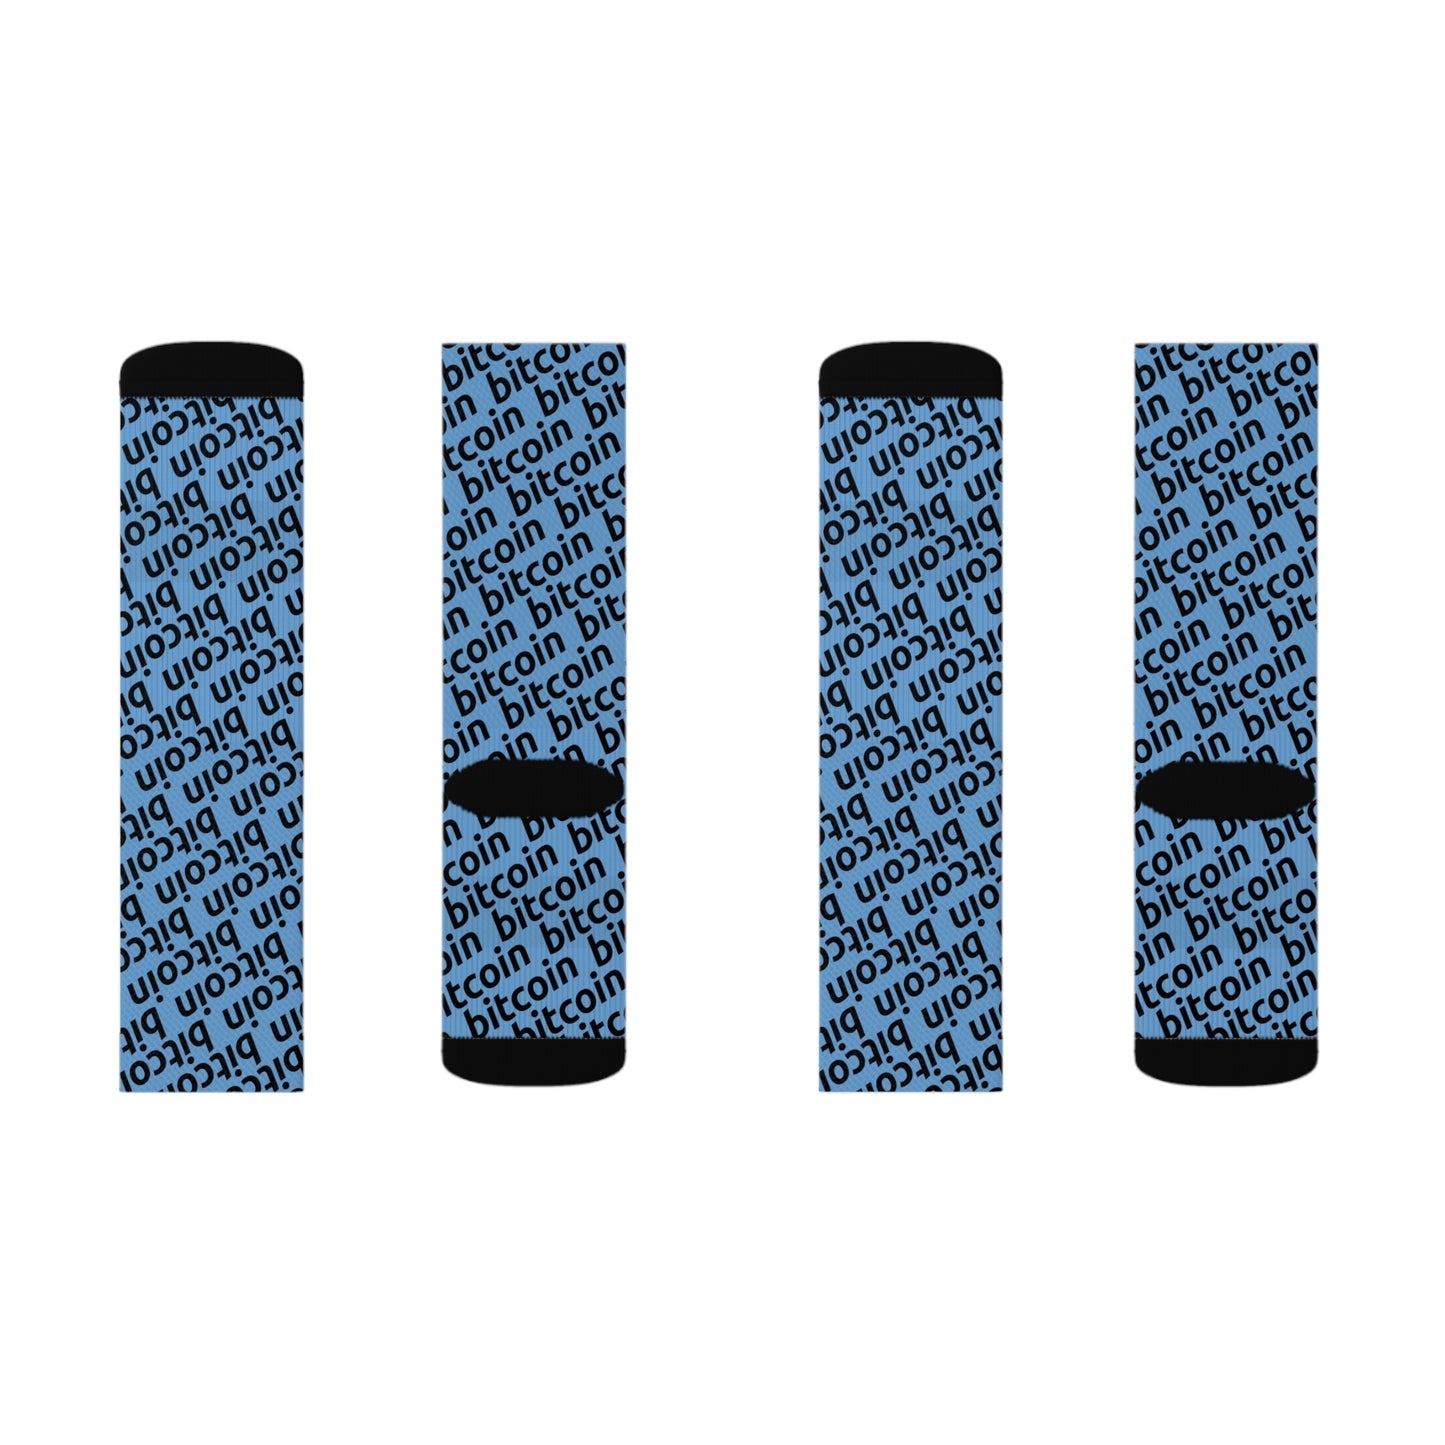 Bitcoin Blu Socks